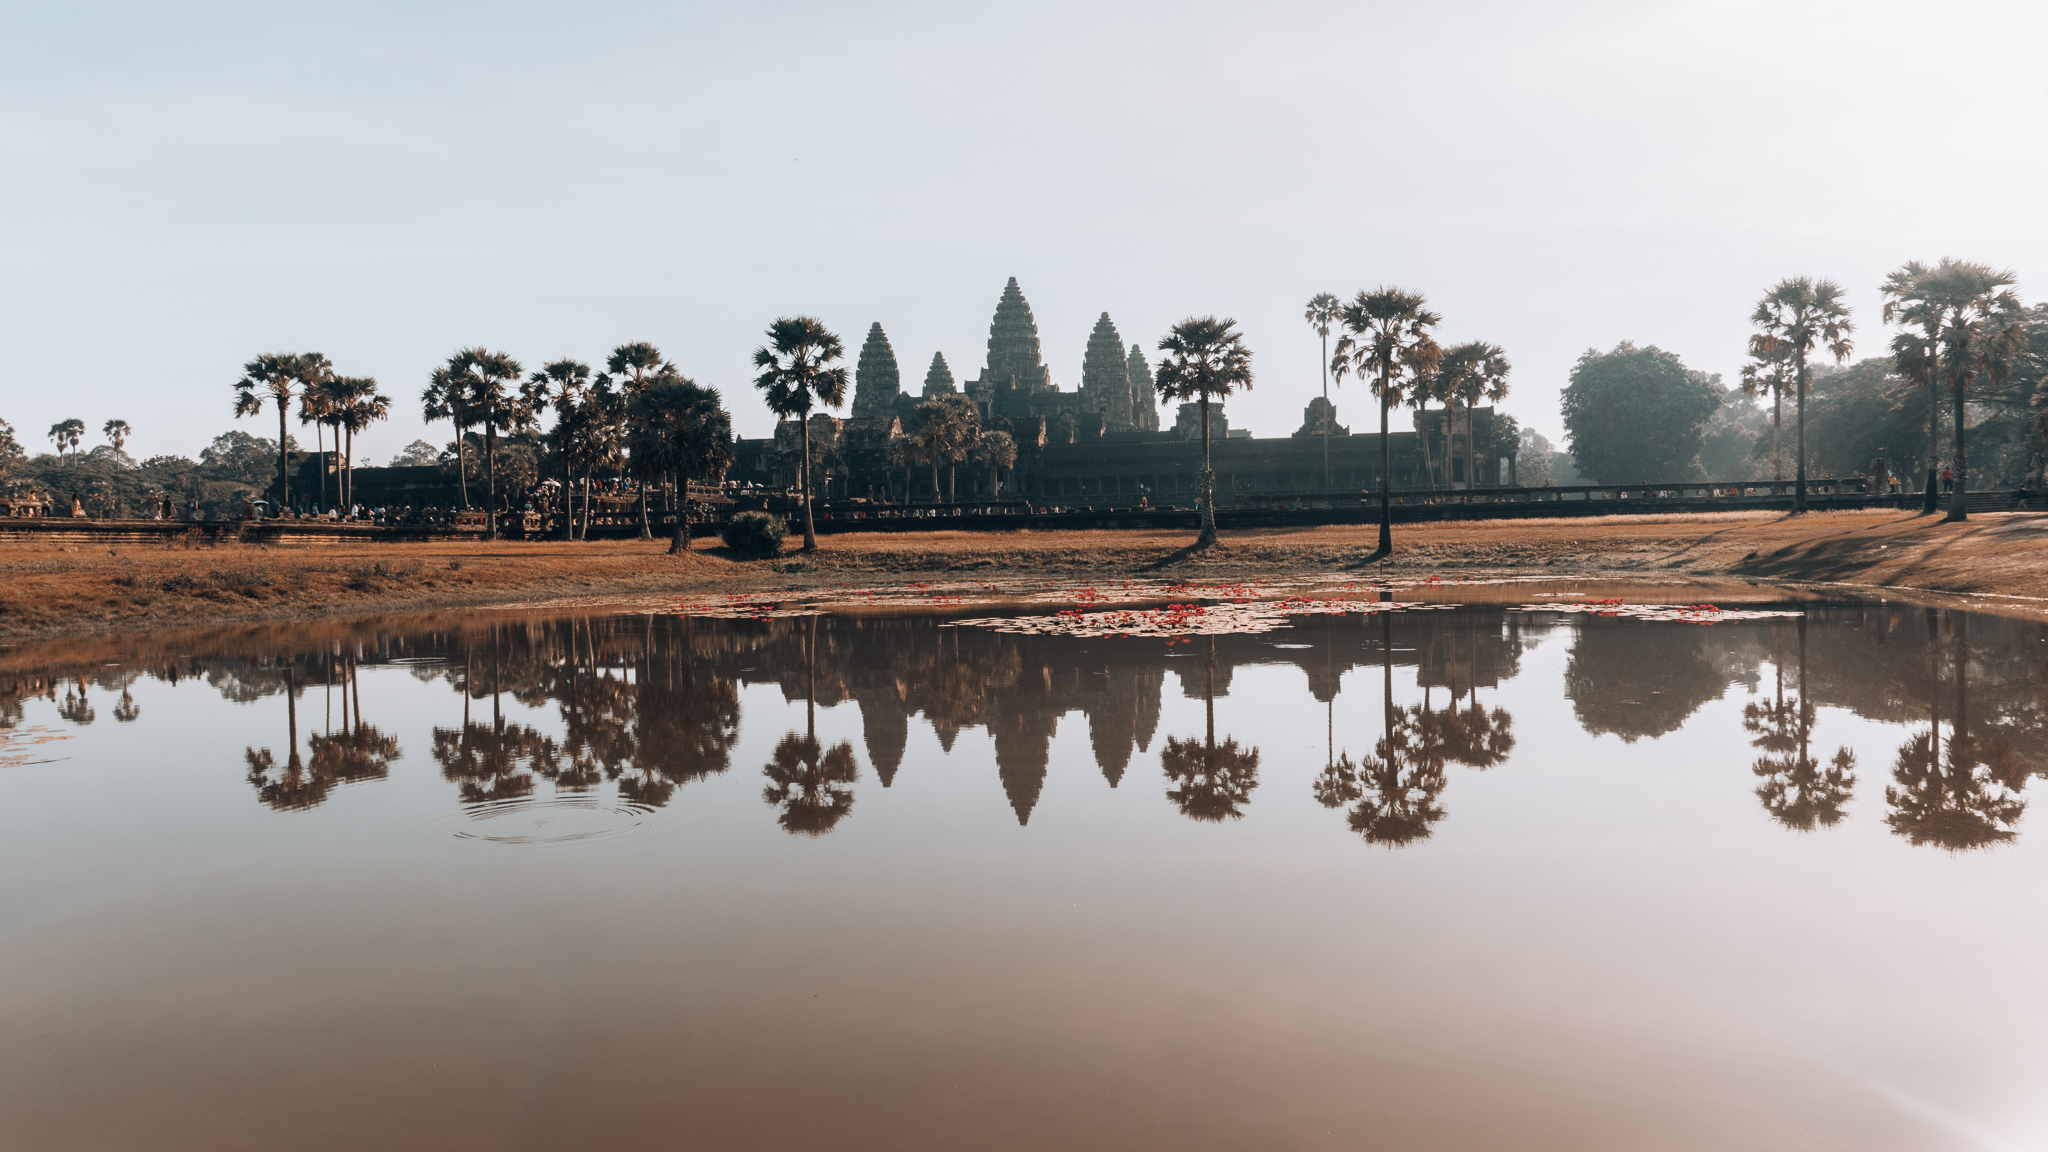 Angkor Wat: Co je dobré vědět, než vyrazíte